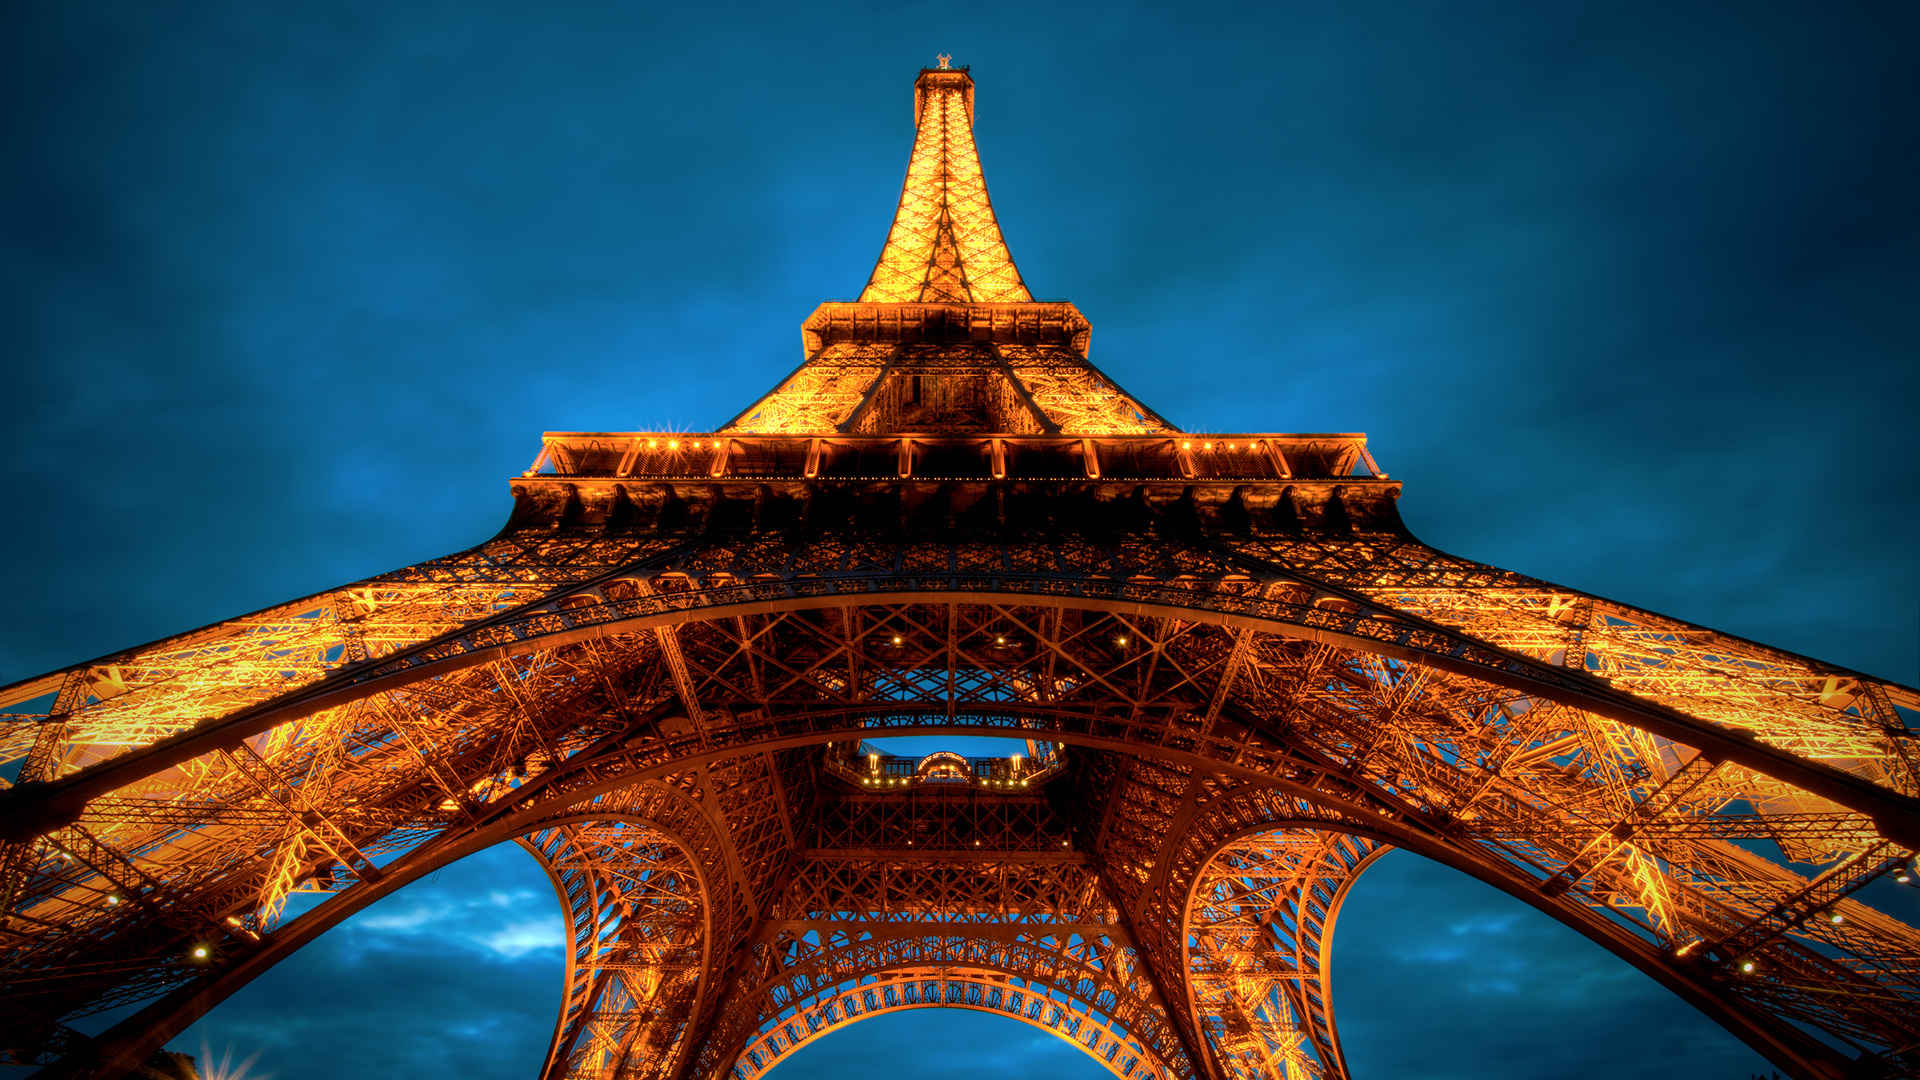 巴黎铁塔灯火通明近照壁纸